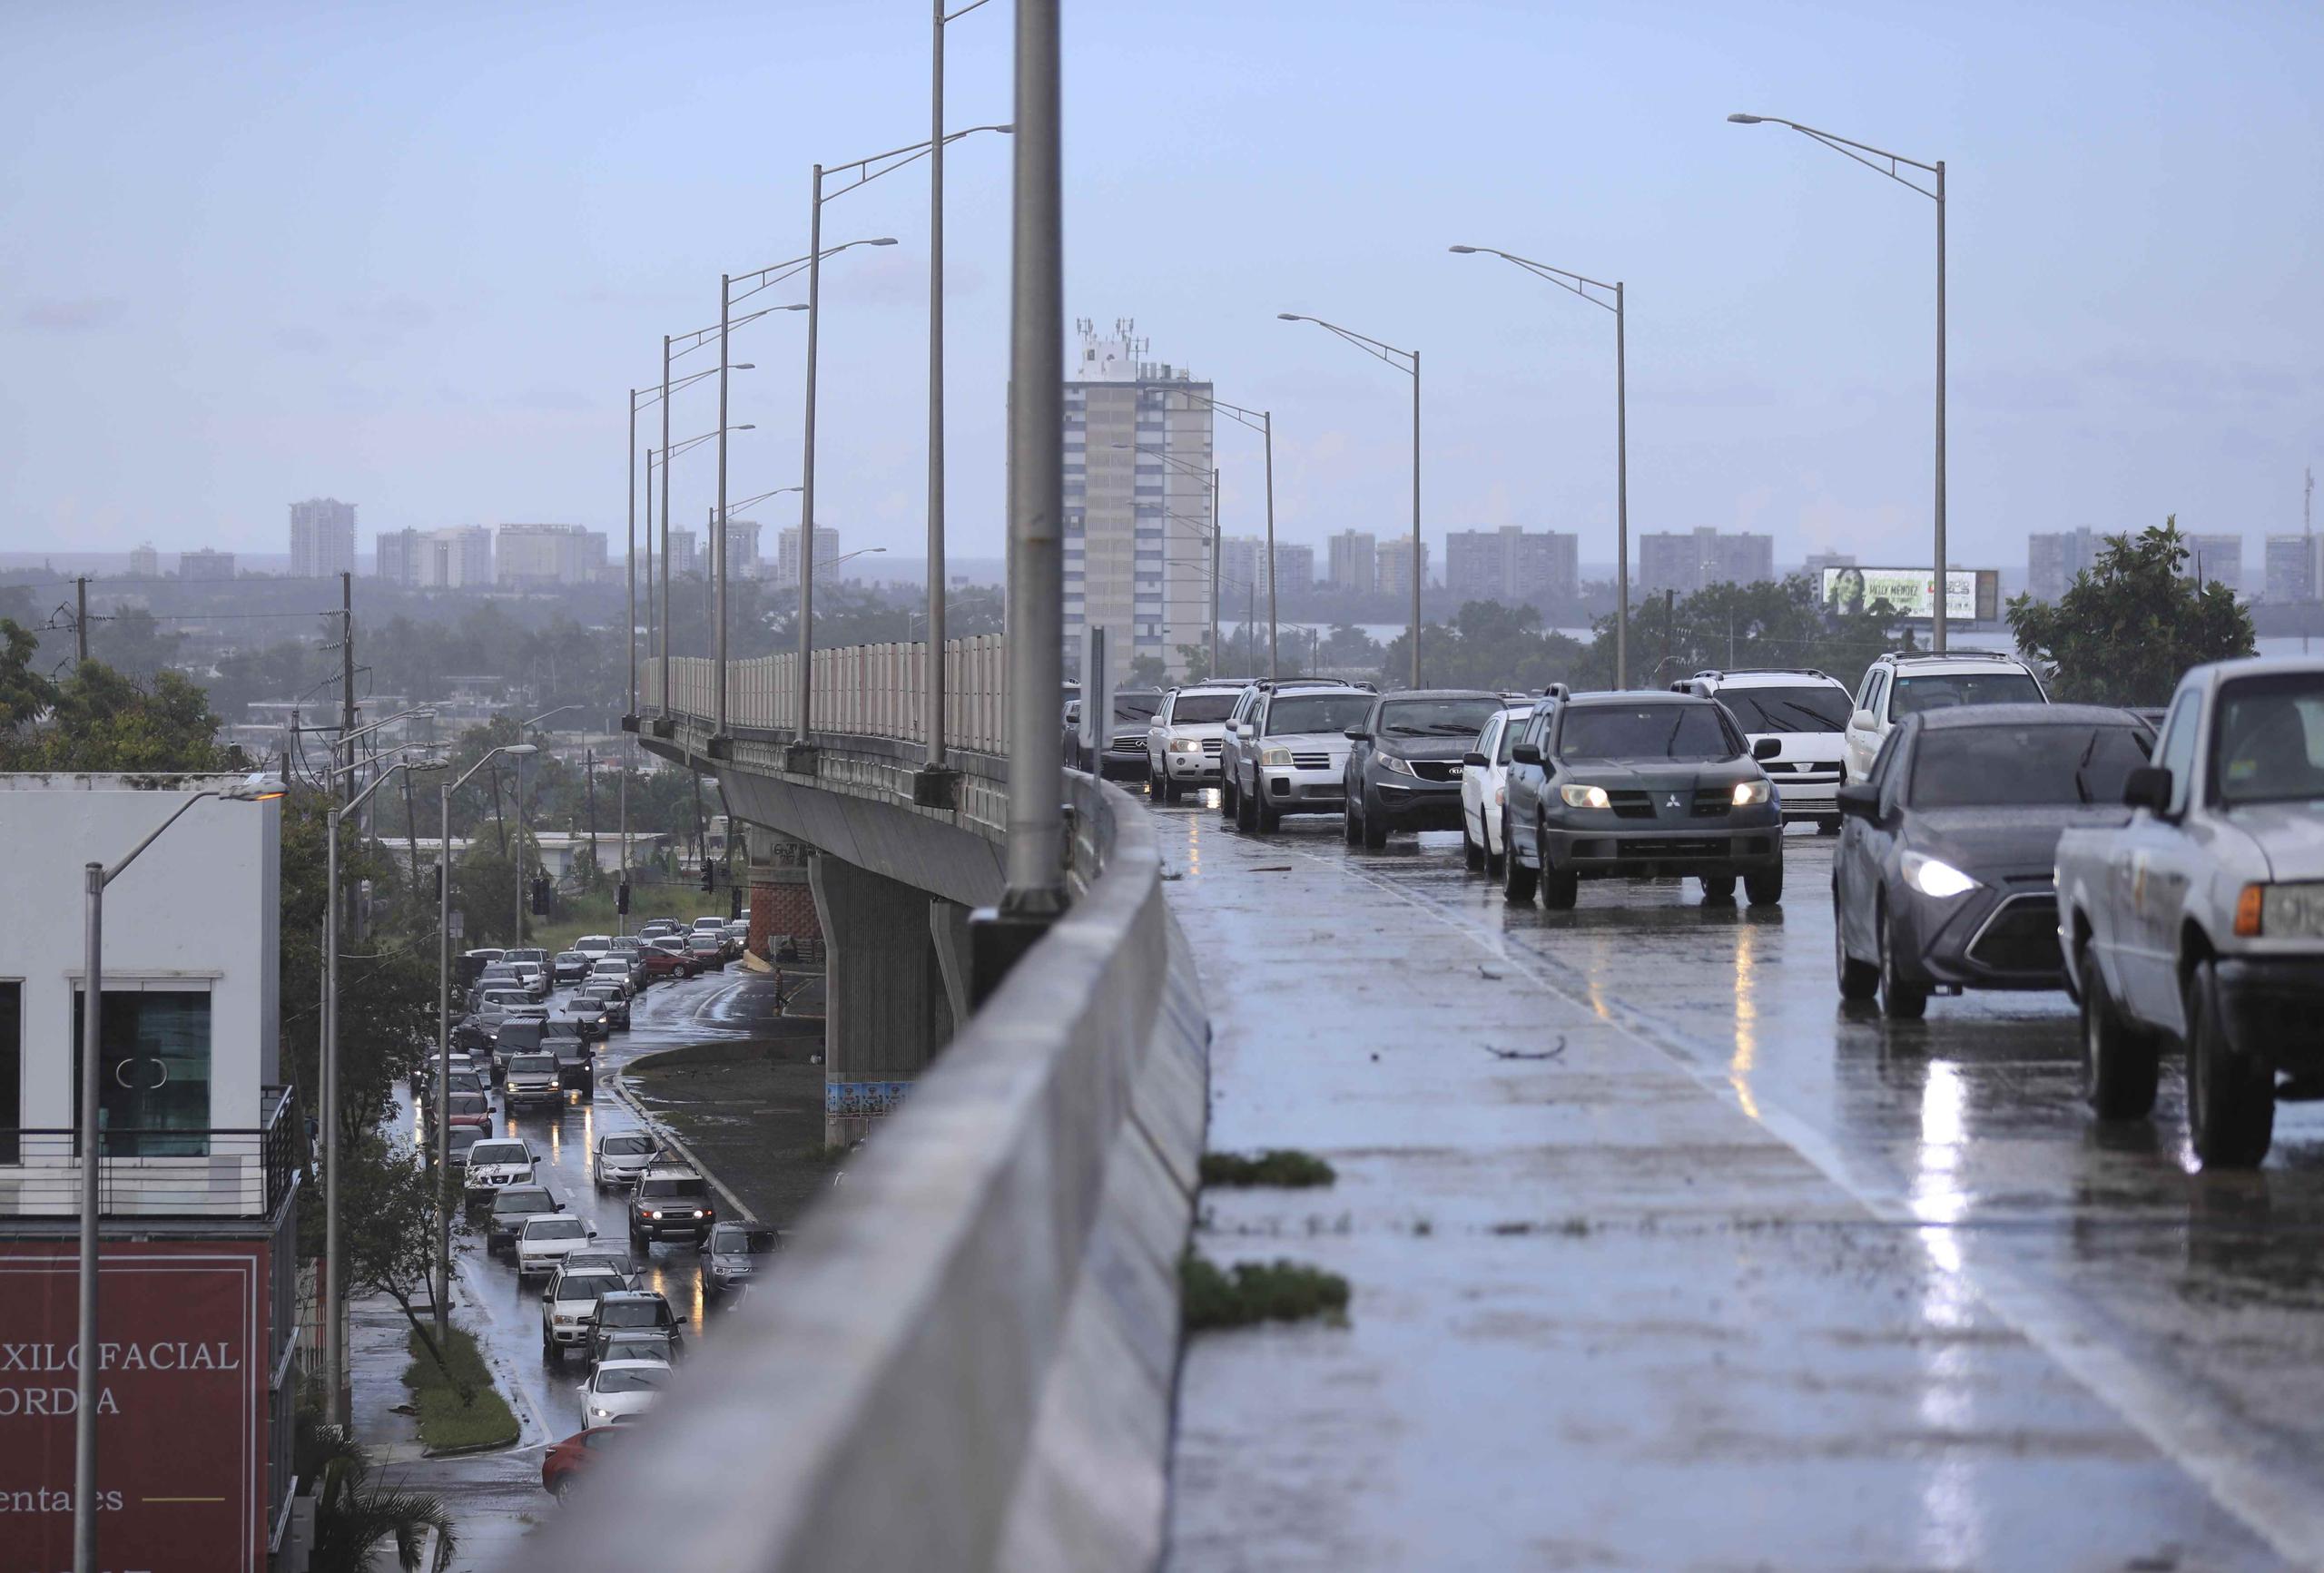 Inundación y fuerte congestión vehicular en la avenida 65 de infantería por fuertes lluvias en el área de Rio Piedras.(teresa.canino@gfrmedia.com)